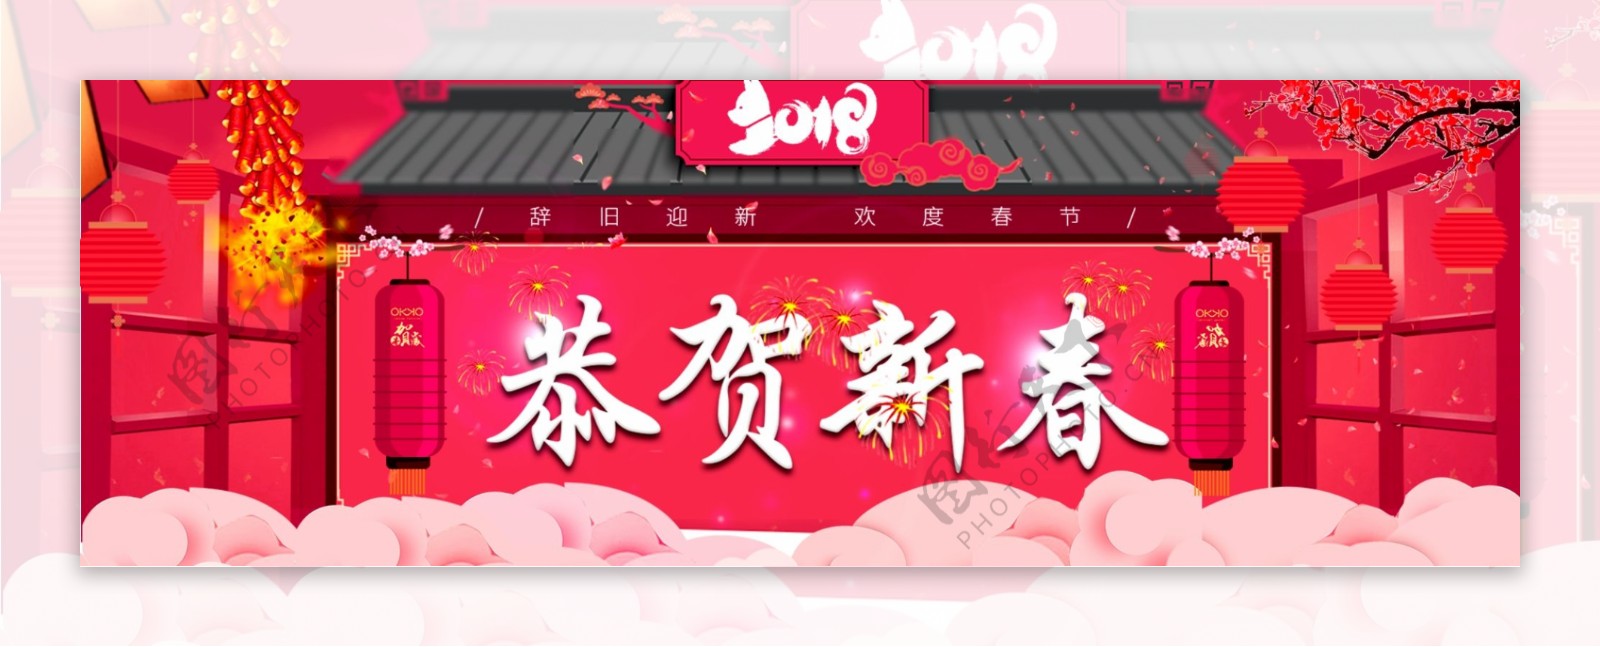 2018新年新春祝贺活动banner